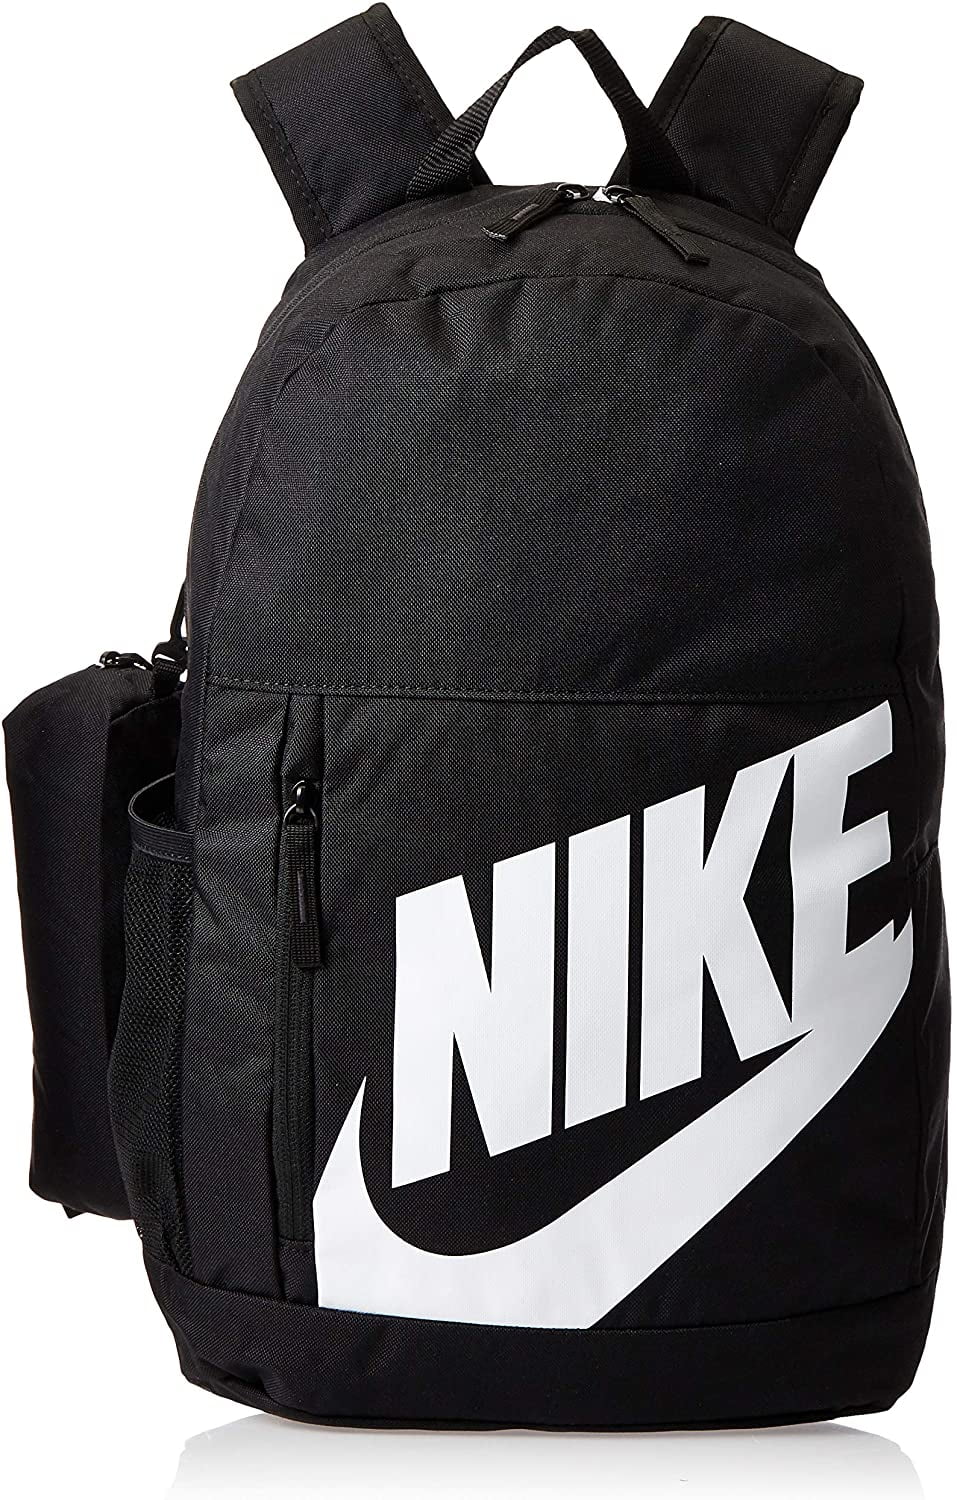 account vrede genoeg Nike Kids Youth Elemental Backpack-Fall19 - Walmart.com